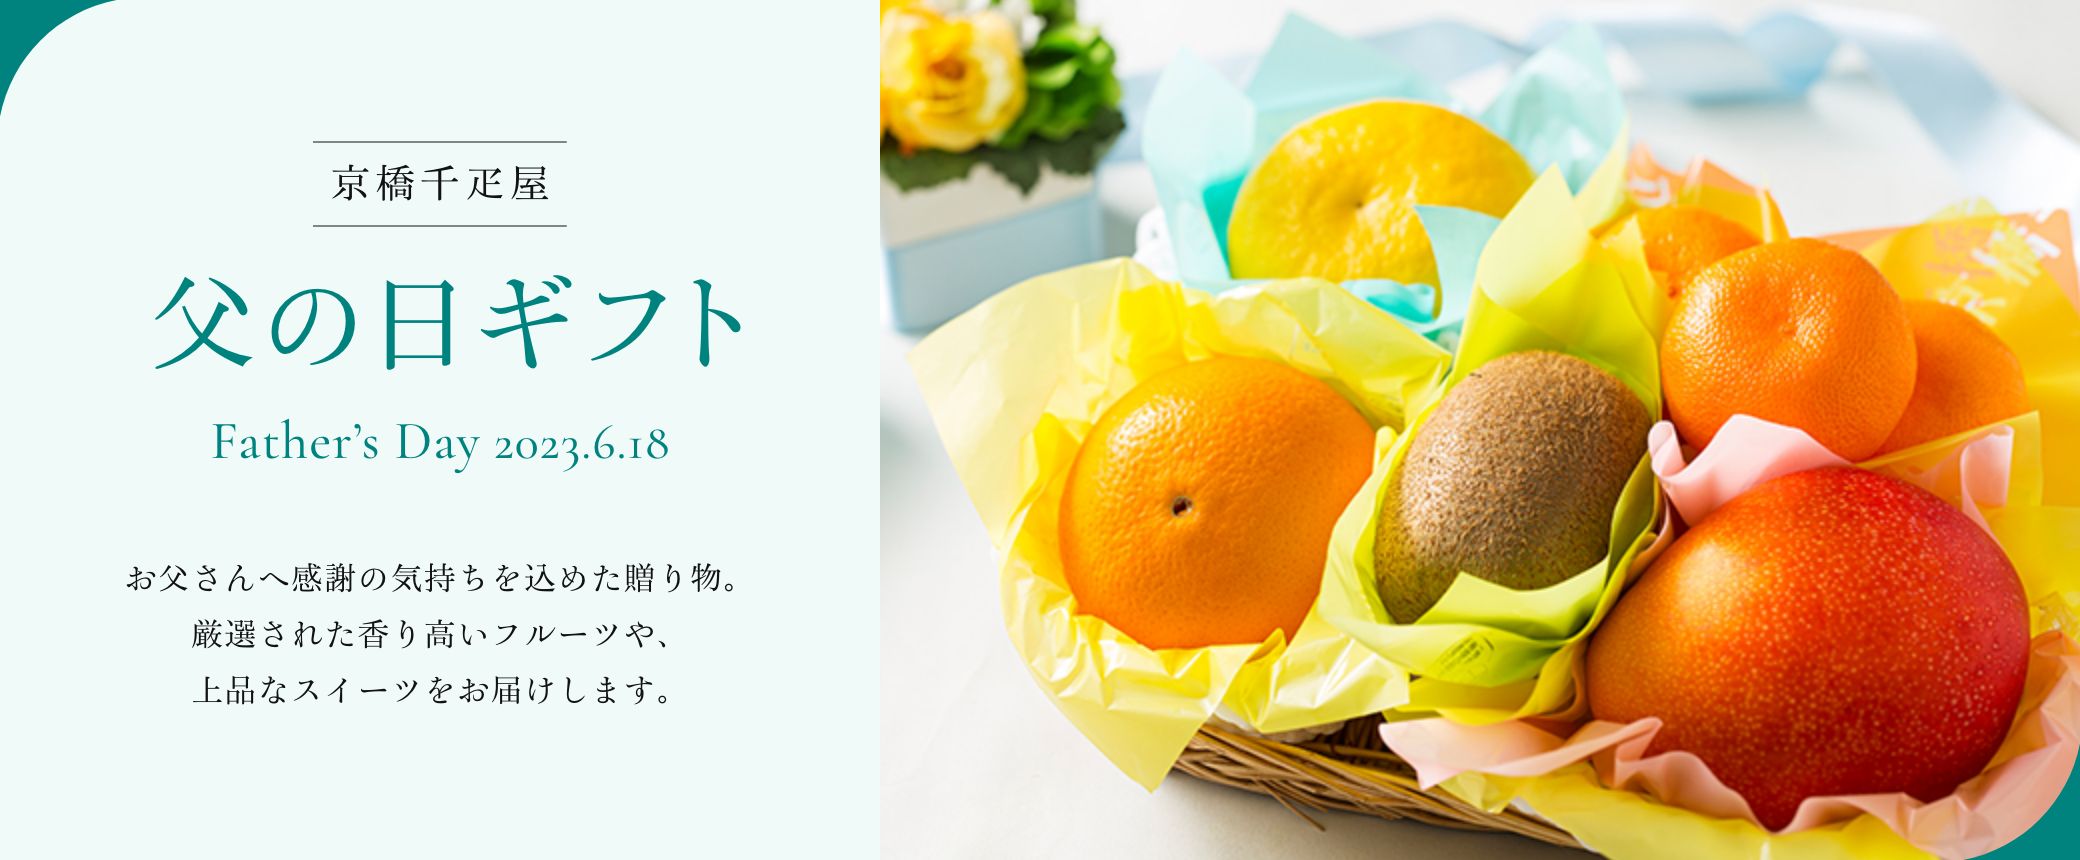 京橋千疋屋 父の日ギフト 2023 お父さんへ感謝の気持ちを込めた贈り物。厳選された香り高いフルーツや、上品なスイーツをお届けします。